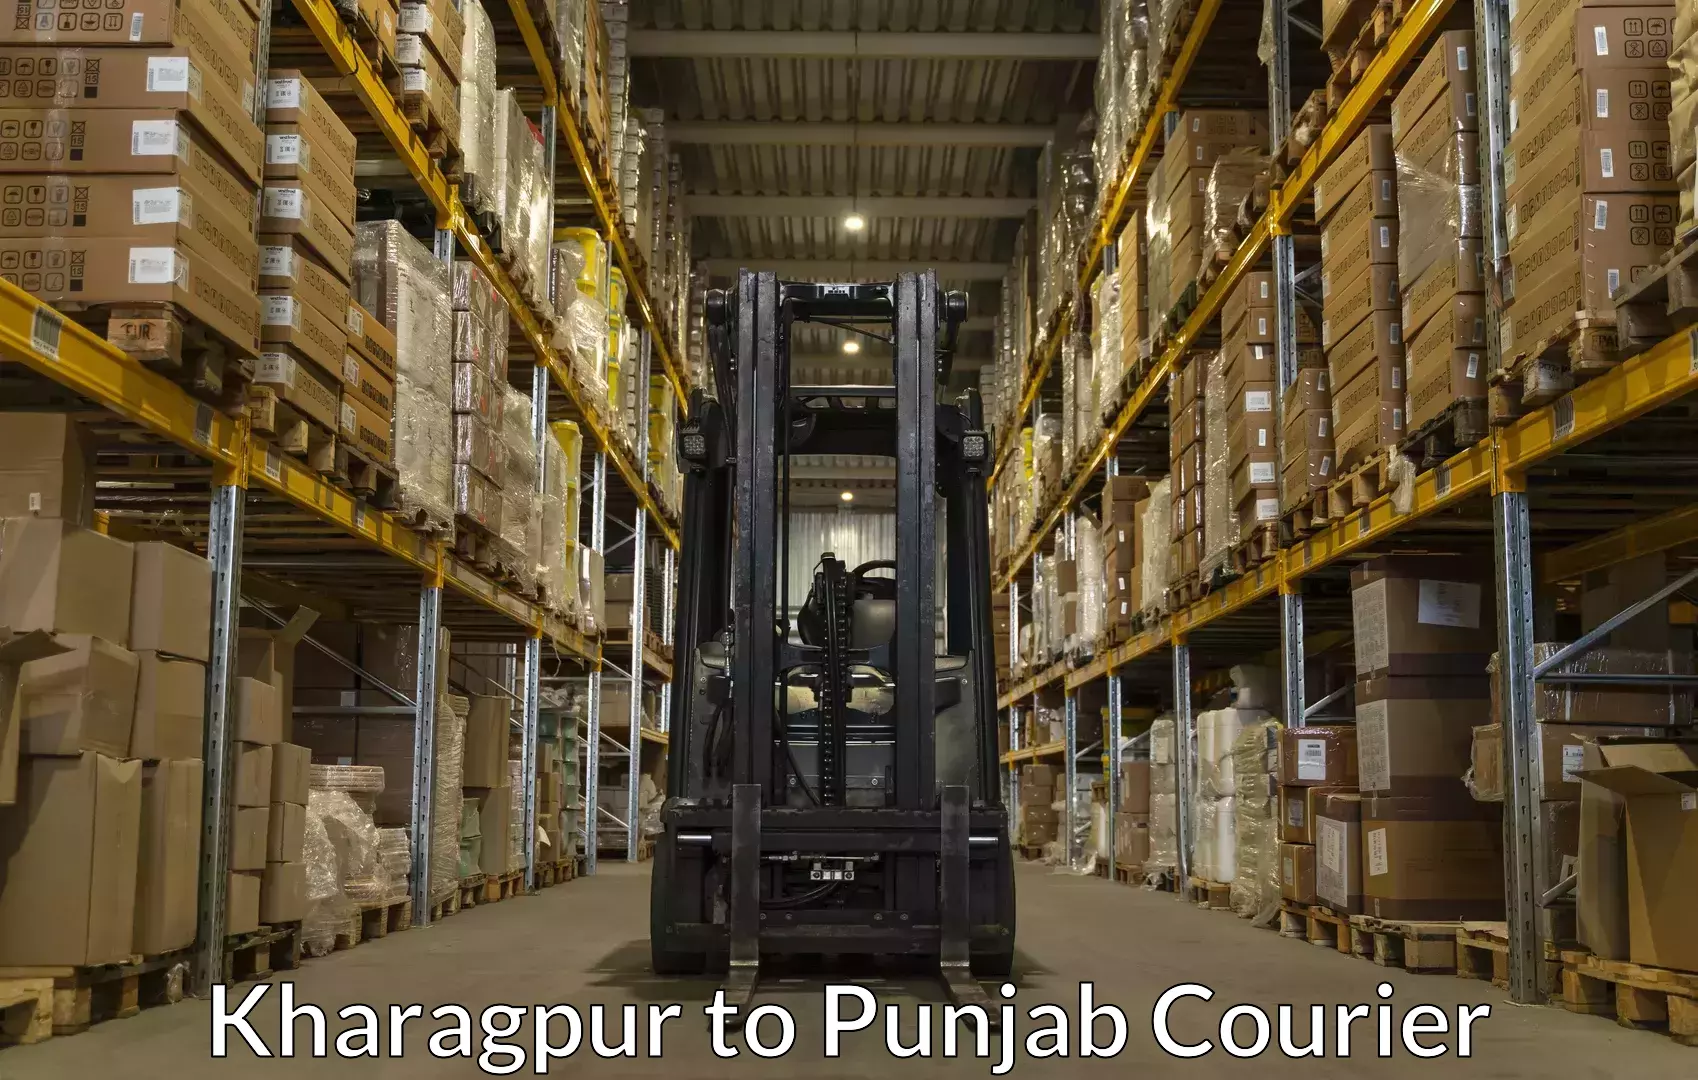 Luggage dispatch service Kharagpur to Punjab